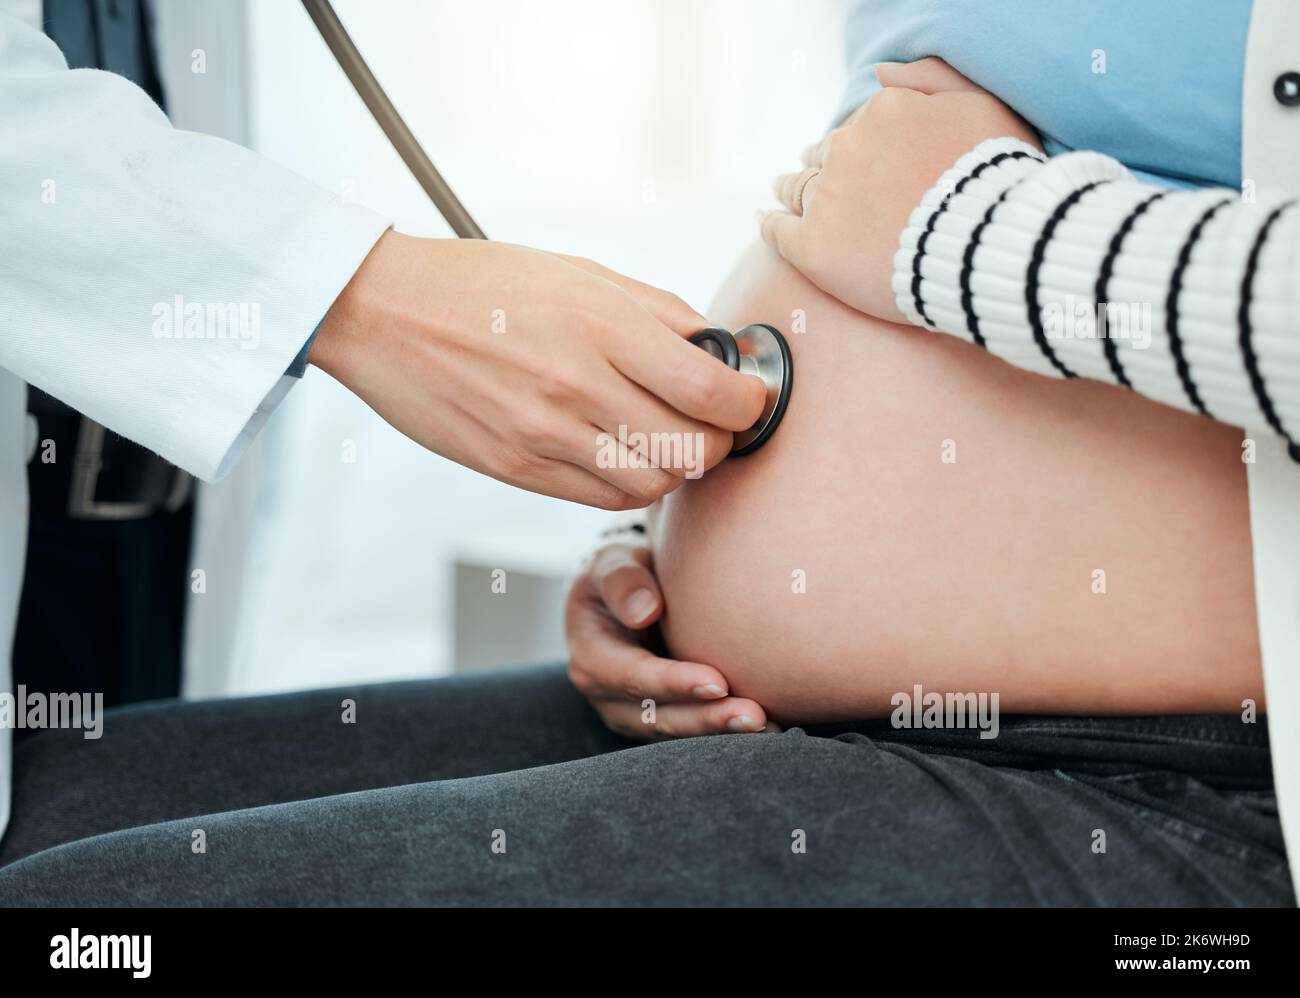 un medico non riconoscibile che usa uno stetoscopio sullo stomaco di una donna incinta durante un controllo. Foto Stock